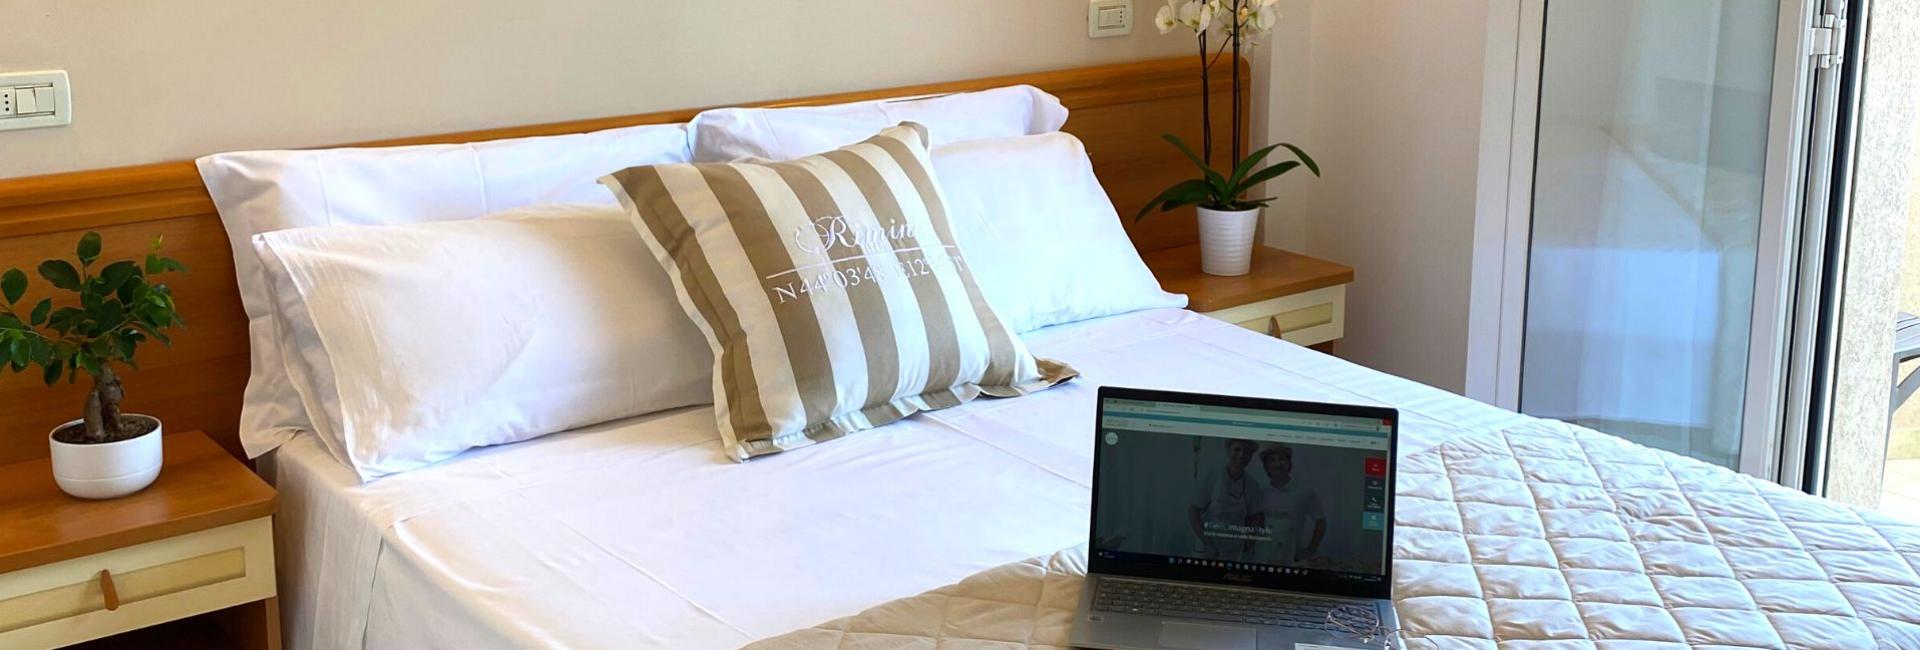 hotelapogeo it promo-early-booking-risparmia-il-20-e-vivi-la-gioia-dell-estate-a-rimini 007